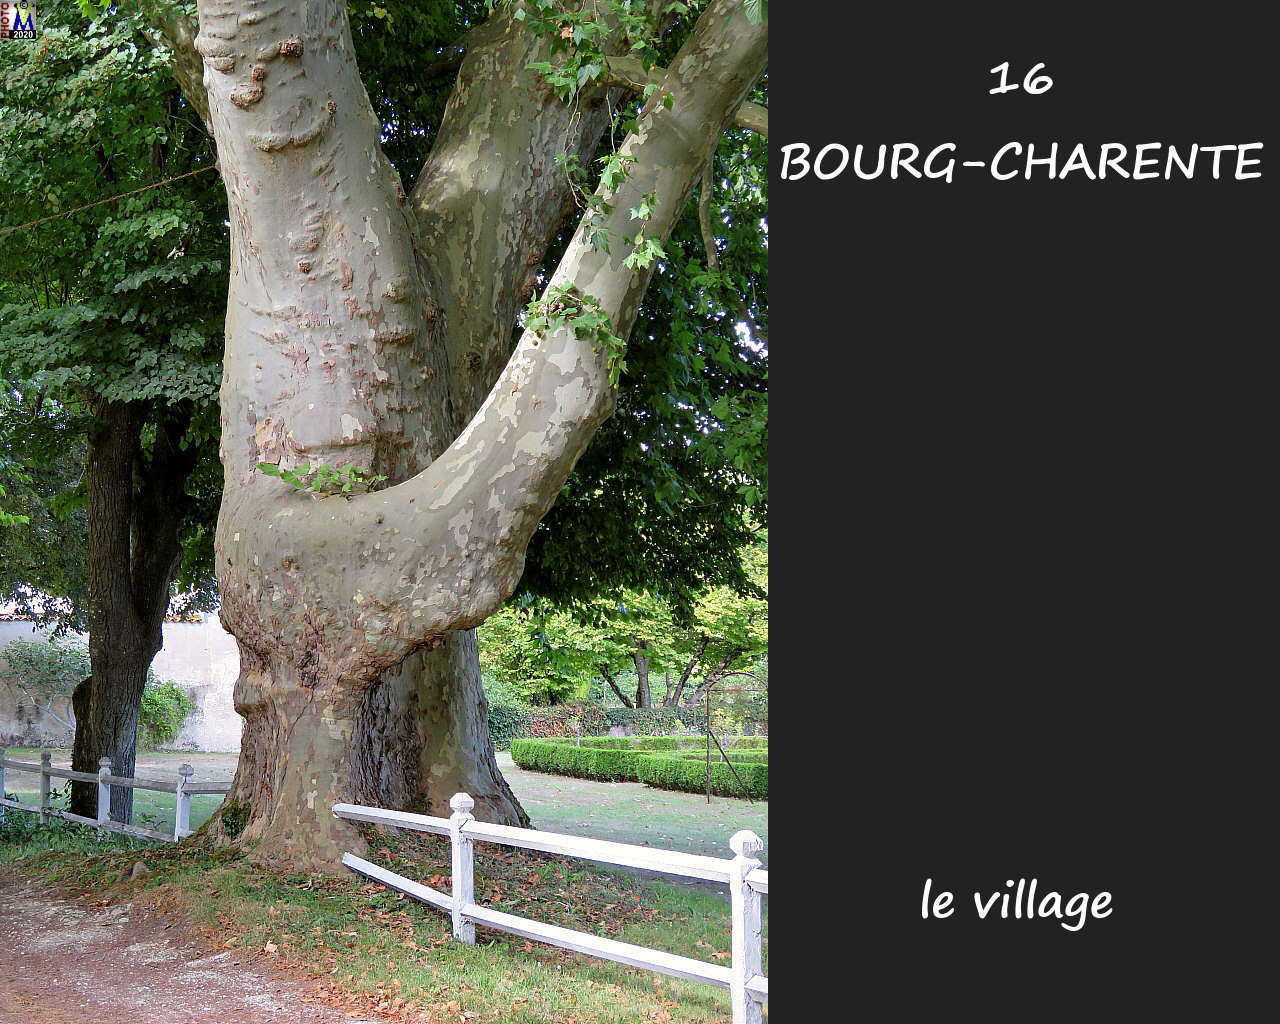 16BOURG-CHARENTE_village_1006.jpg